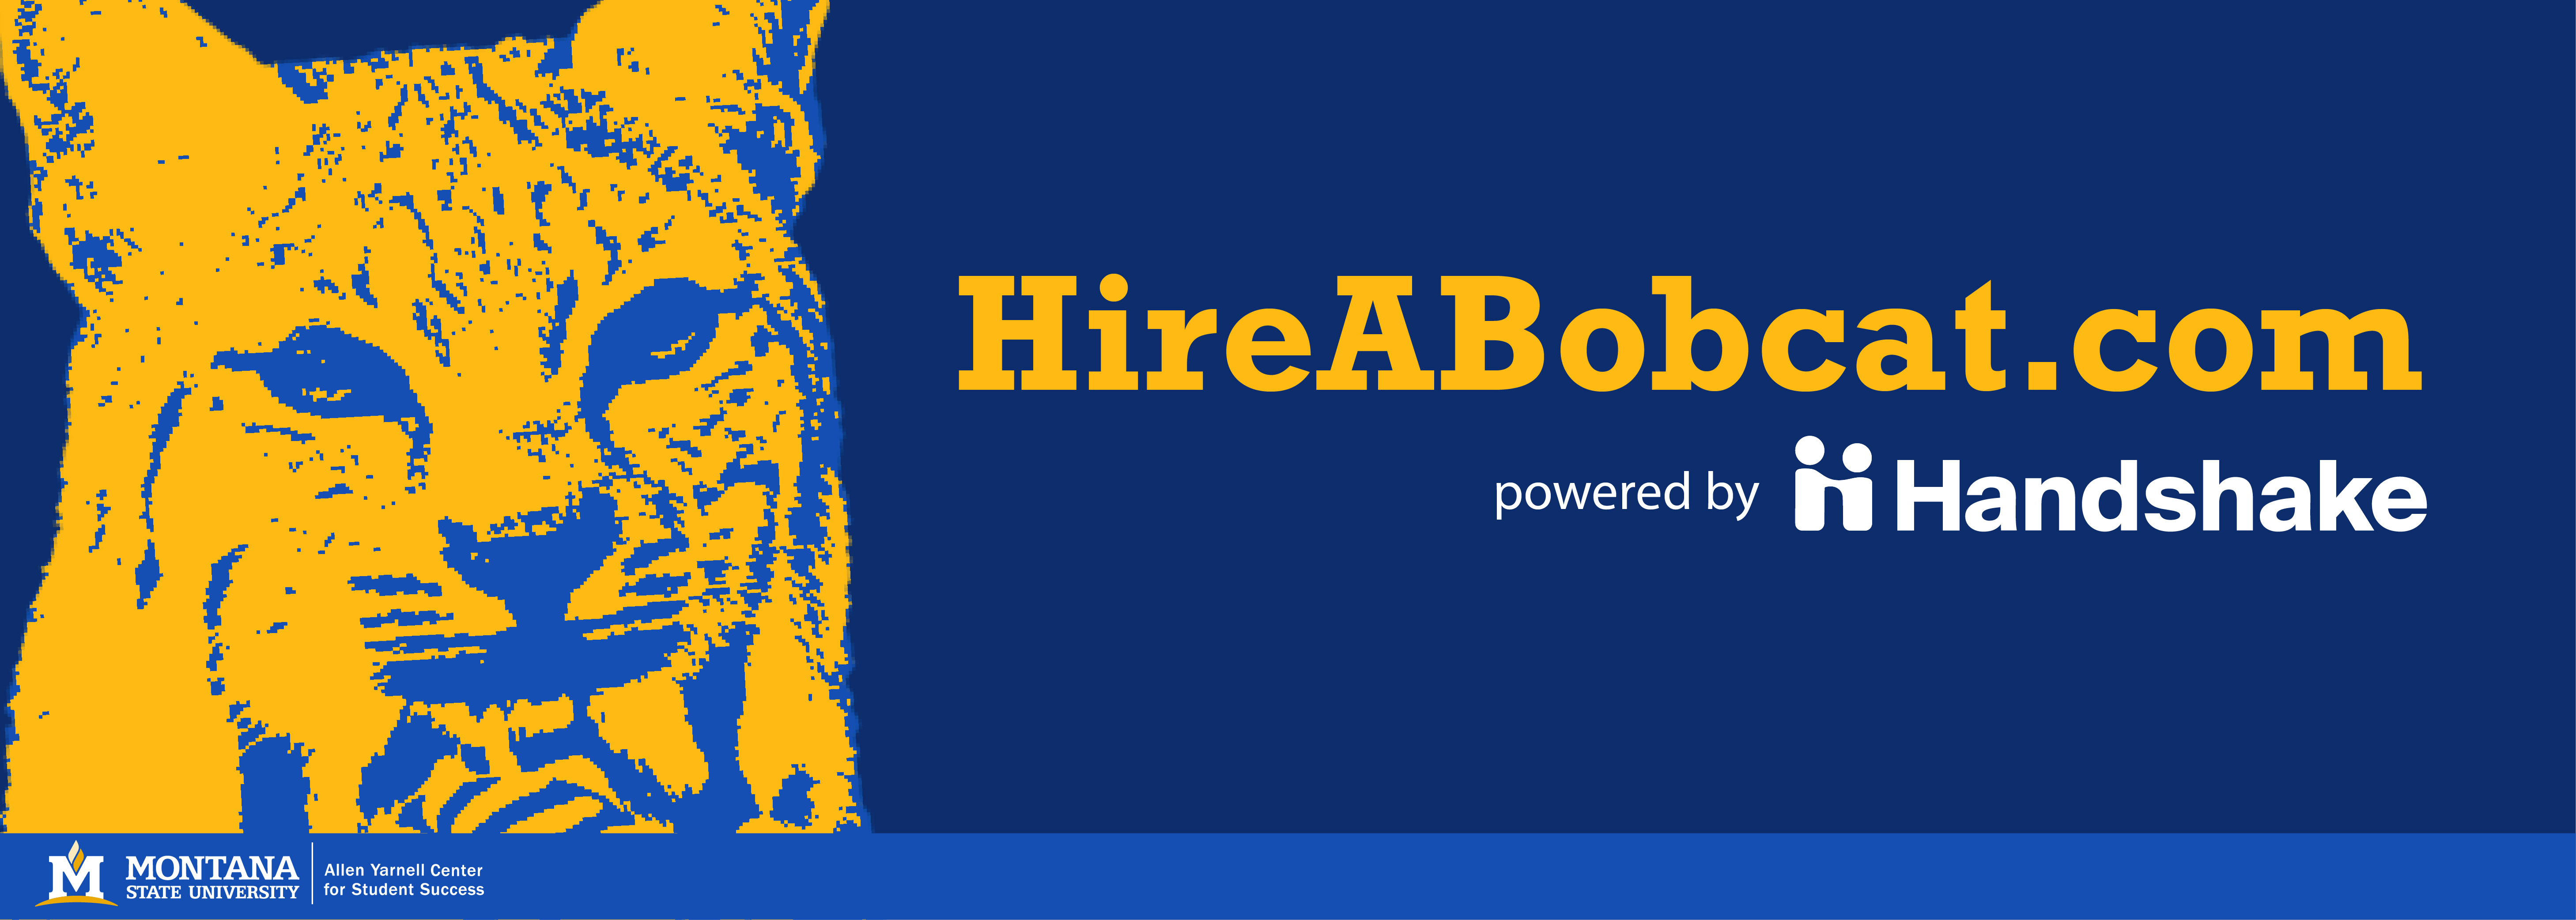 hire a bobcat logo